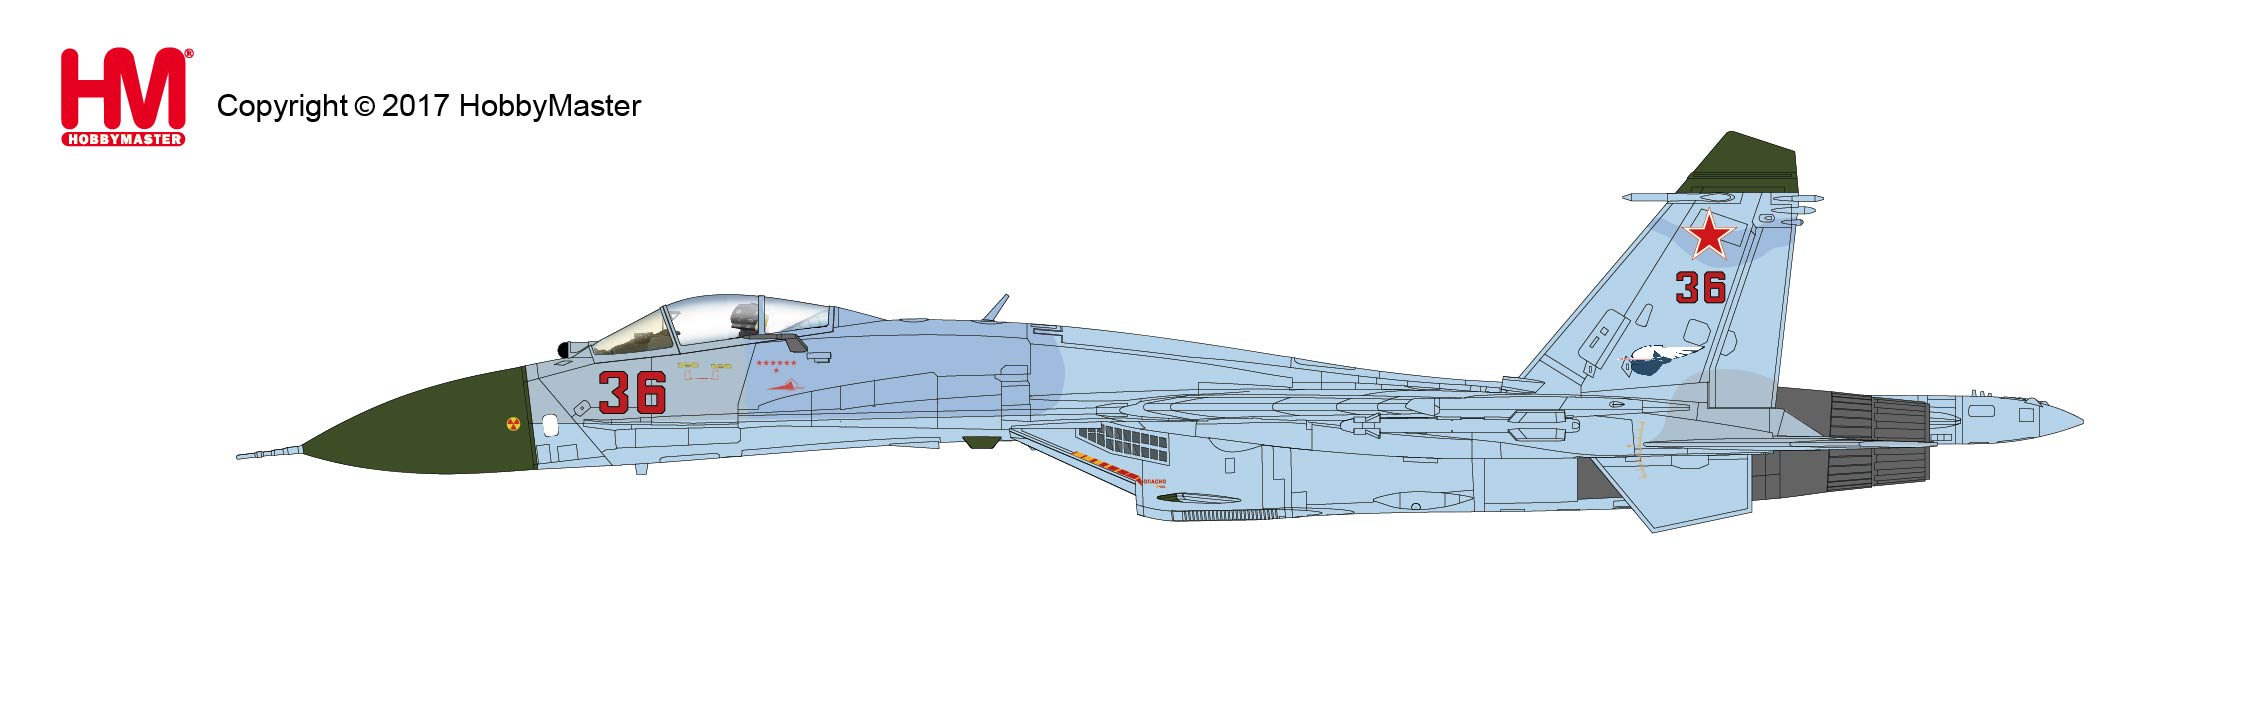 タイプ > 塗装済完成品 > HA6001 1/72 Su-27 フランカーB型 